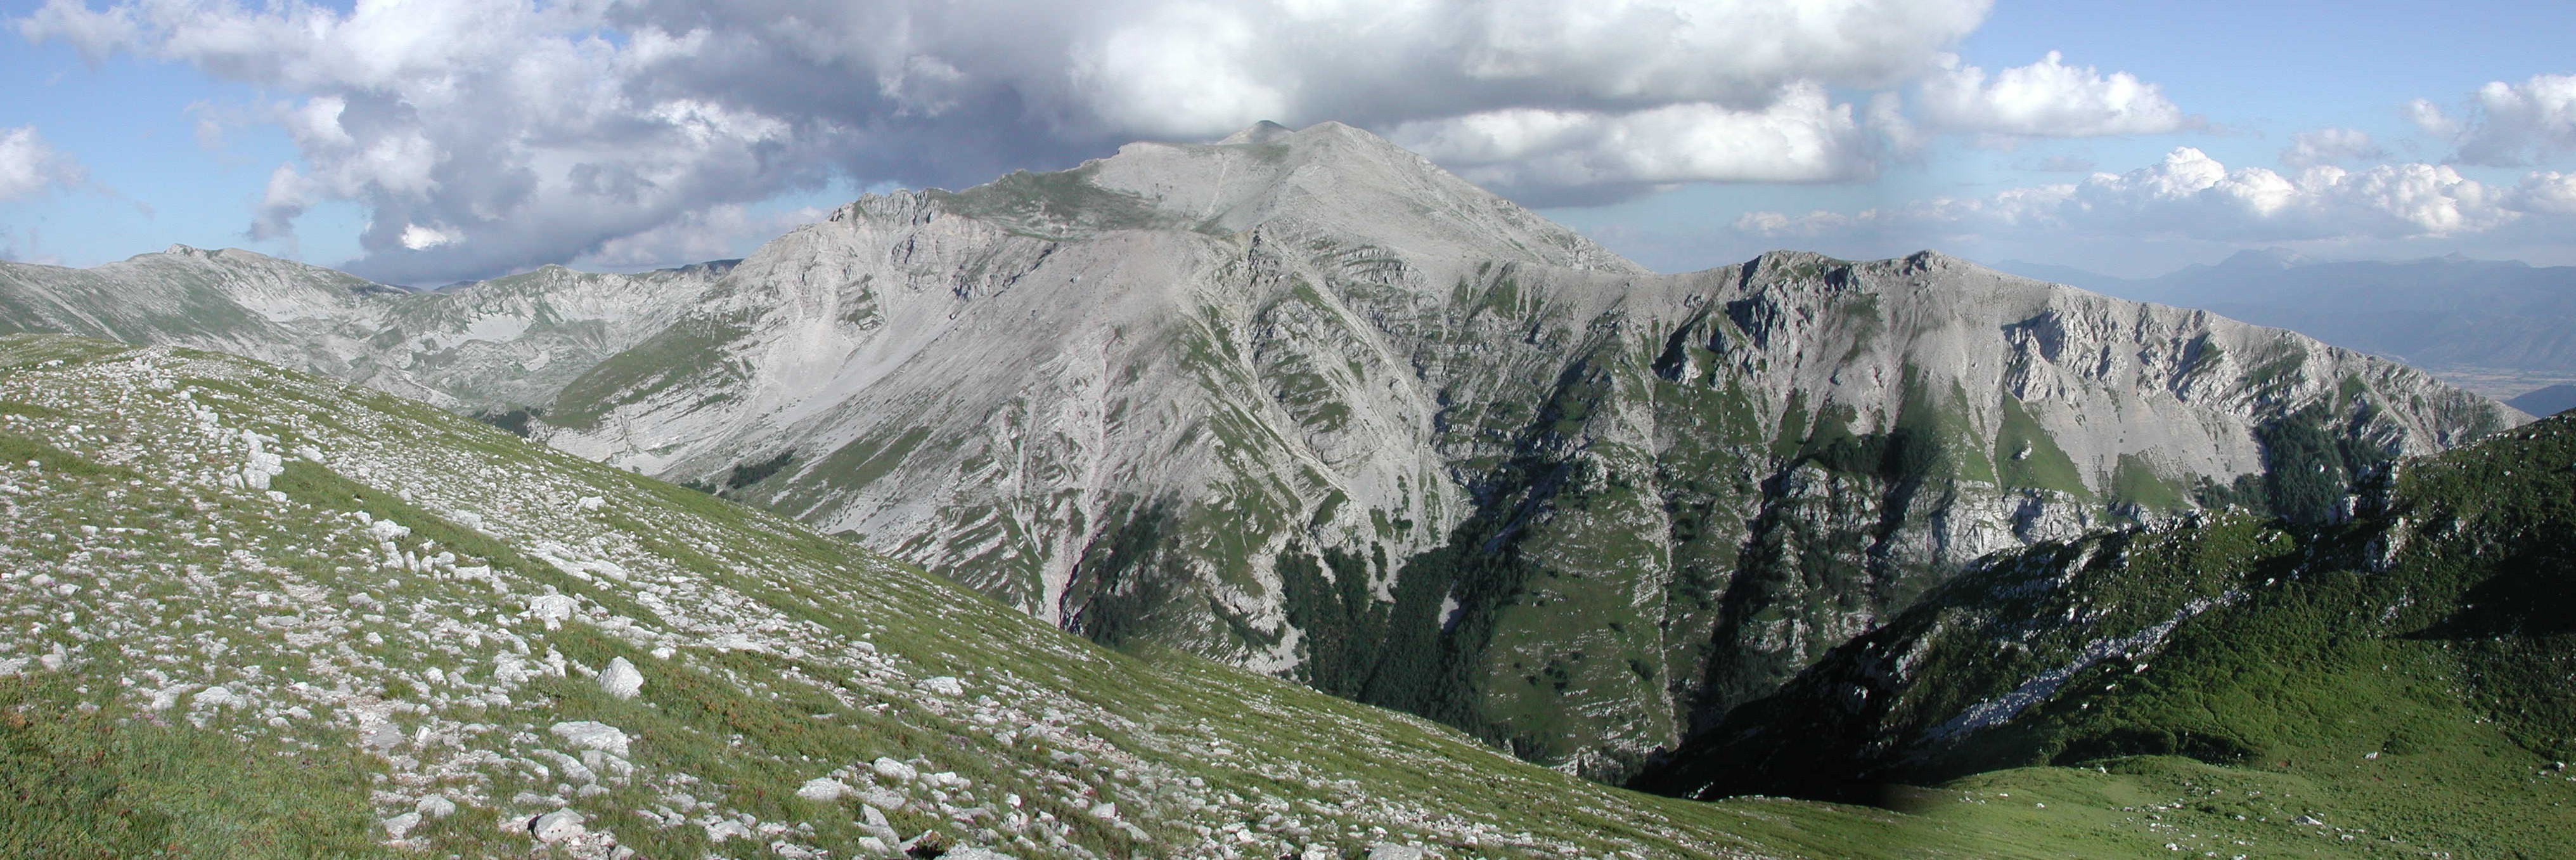 Monte Rozza - Monte Velino